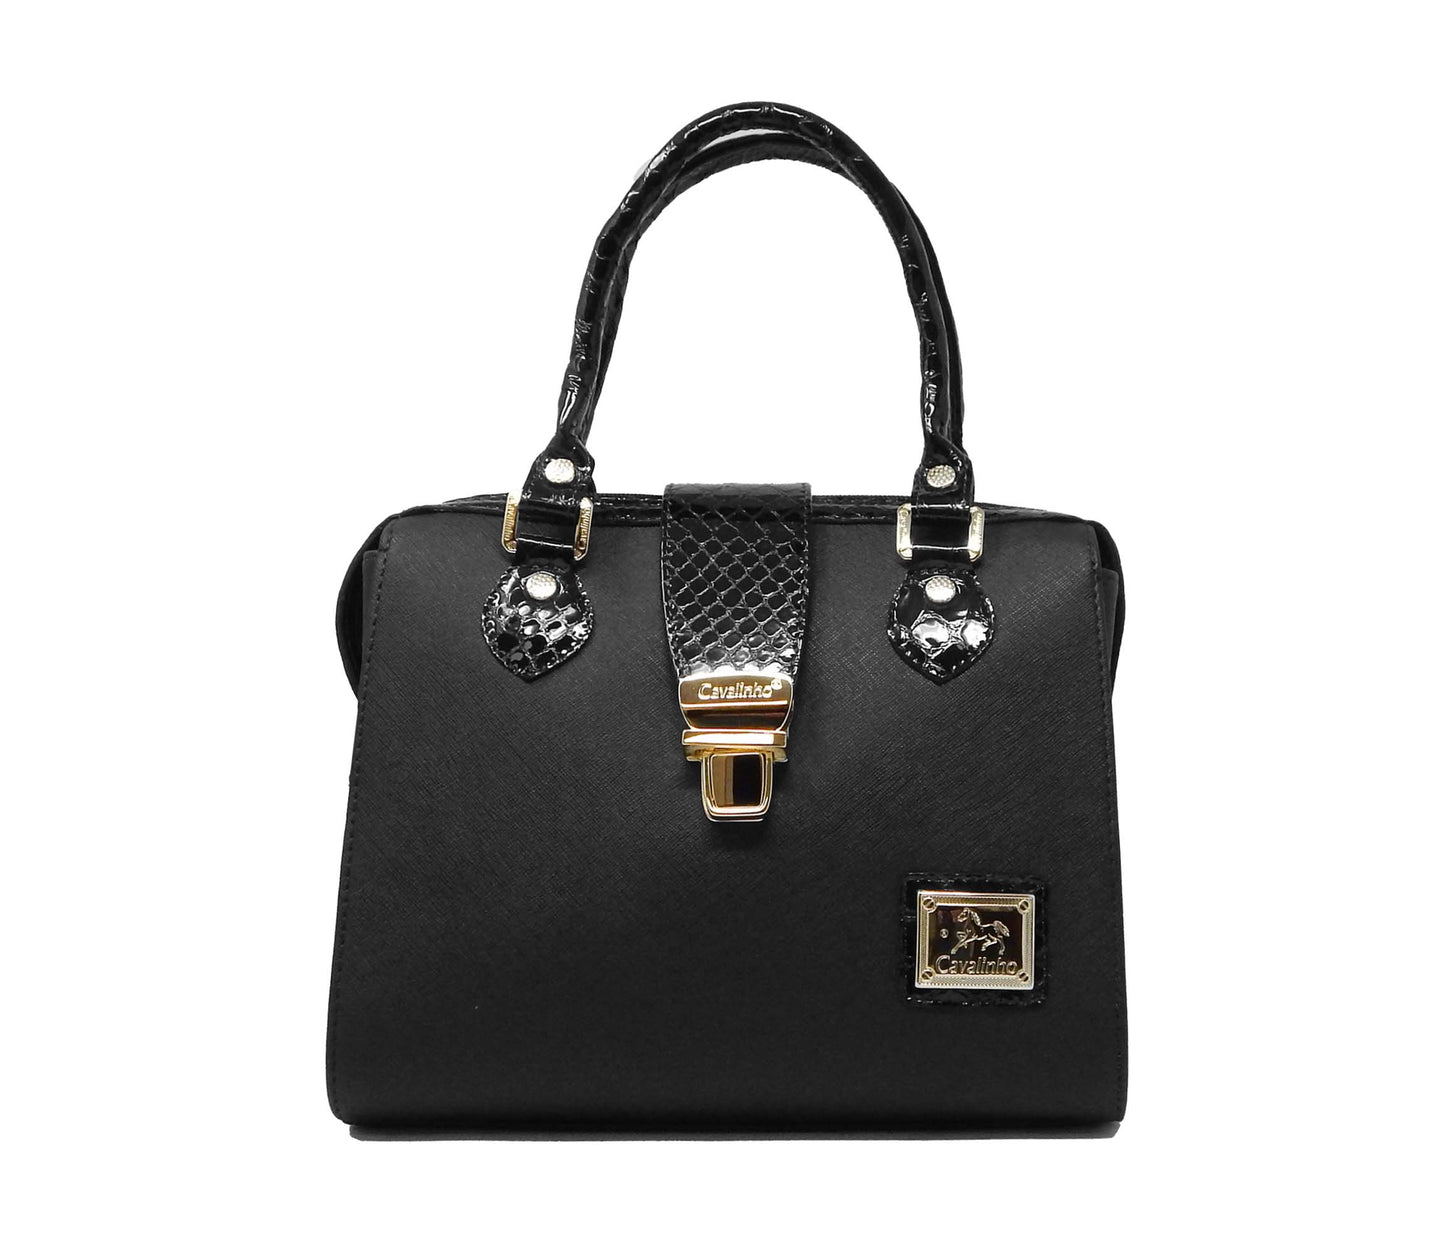 Cavalinho Cherry Blossom Handbag - Black - 18810502.01.99_1